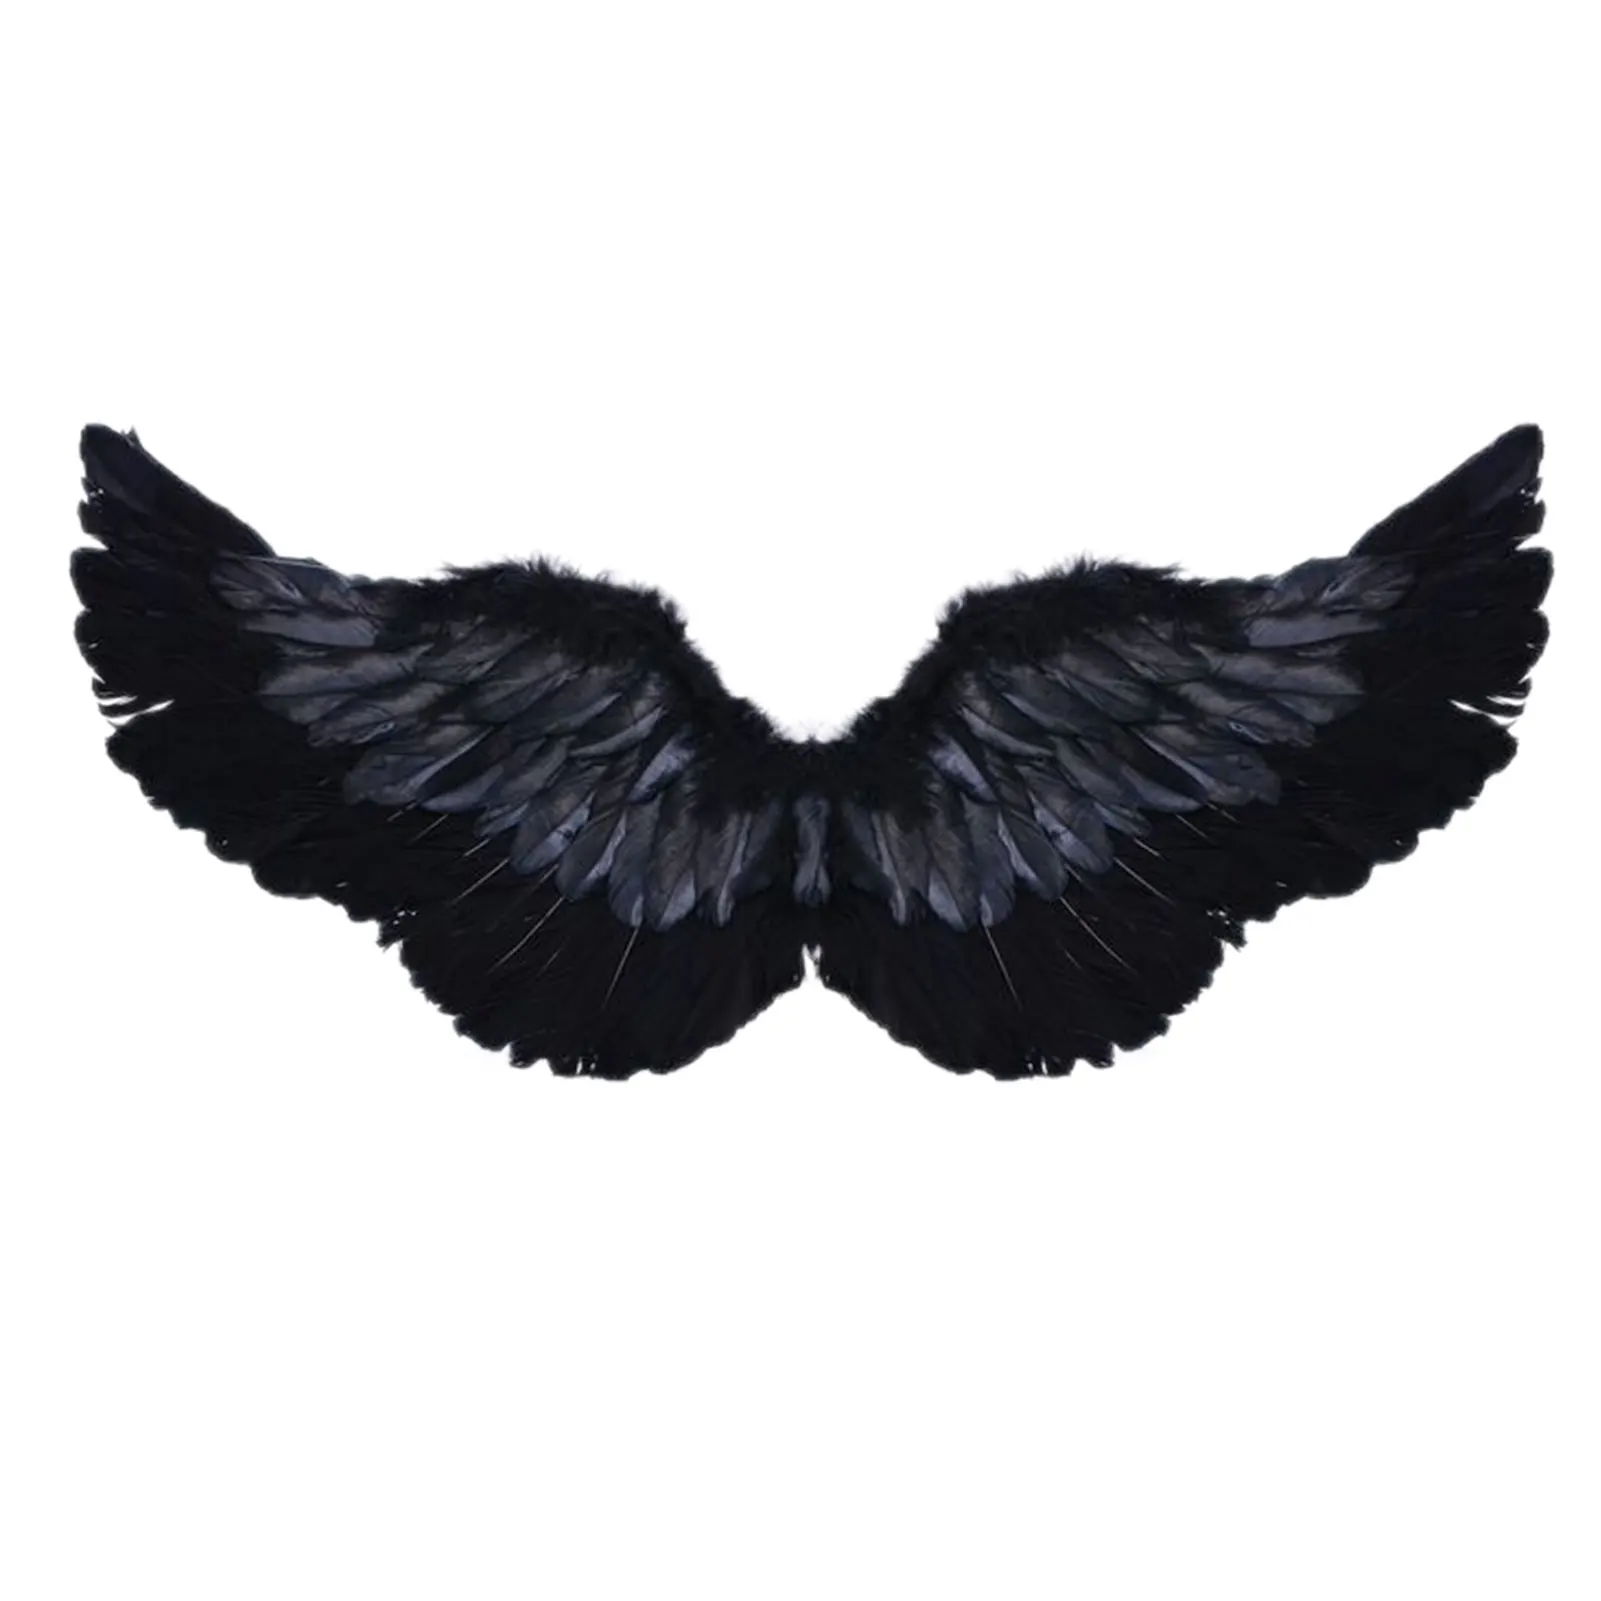 Black Angel Wings Costume Dark Angel Wings Costume Fairy Wings Halloween Costume Feather Wings Halo Fancy Dress Up Costume